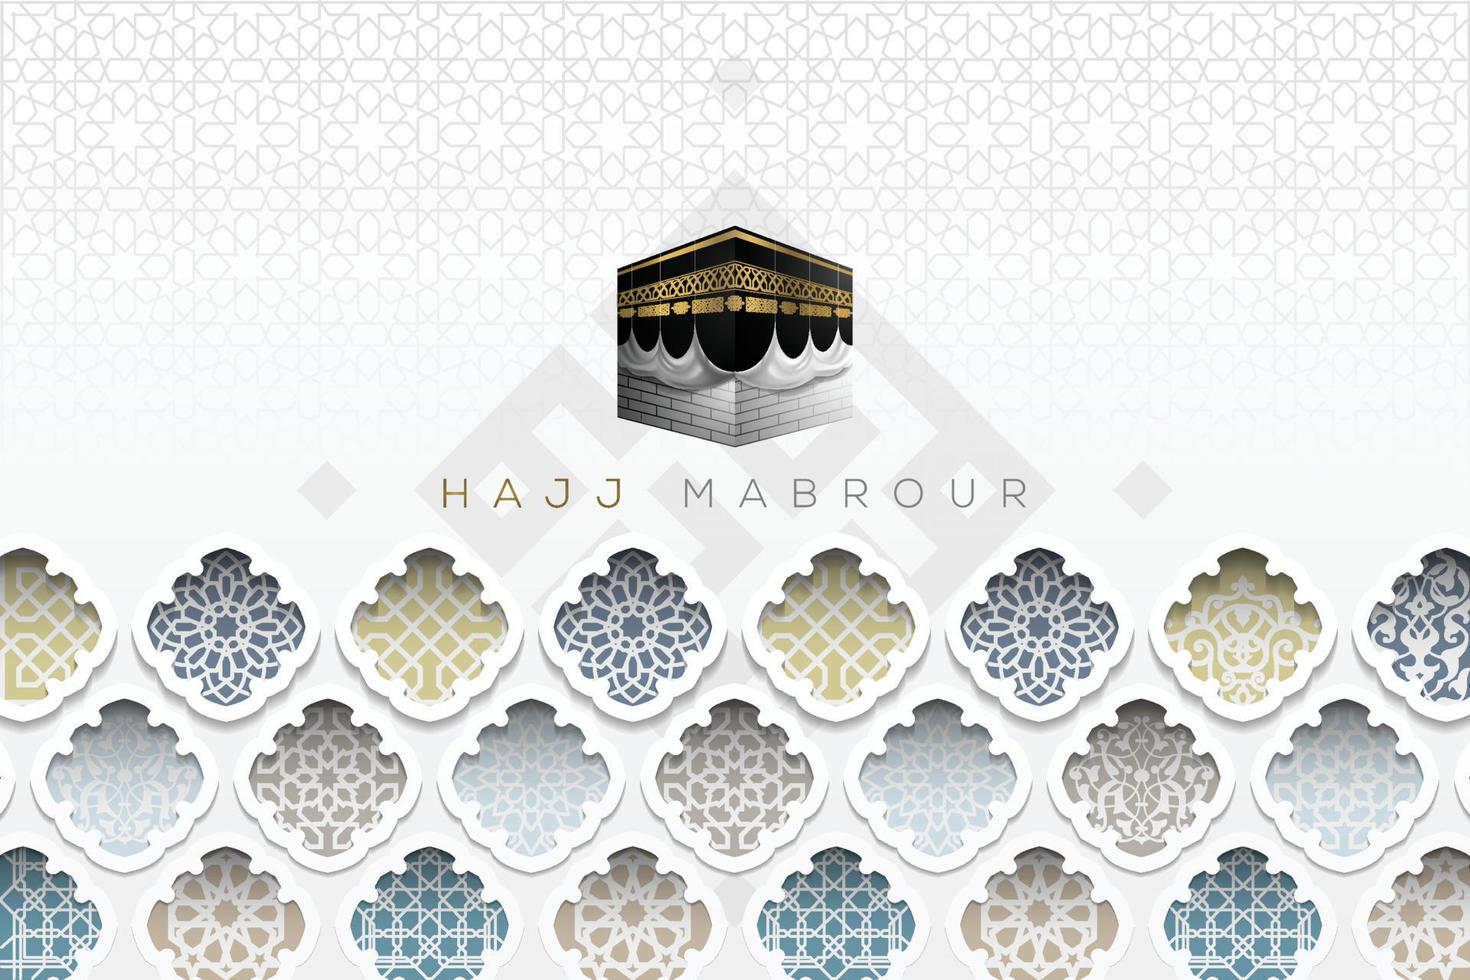 hajj mabrour saluto islamico motivo floreale sfondo disegno vettoriale con calligrafia araba oro lucido. traduzione del testo hajj pellegrinaggio può allah accettare il tuo hajj e concederti il perdono